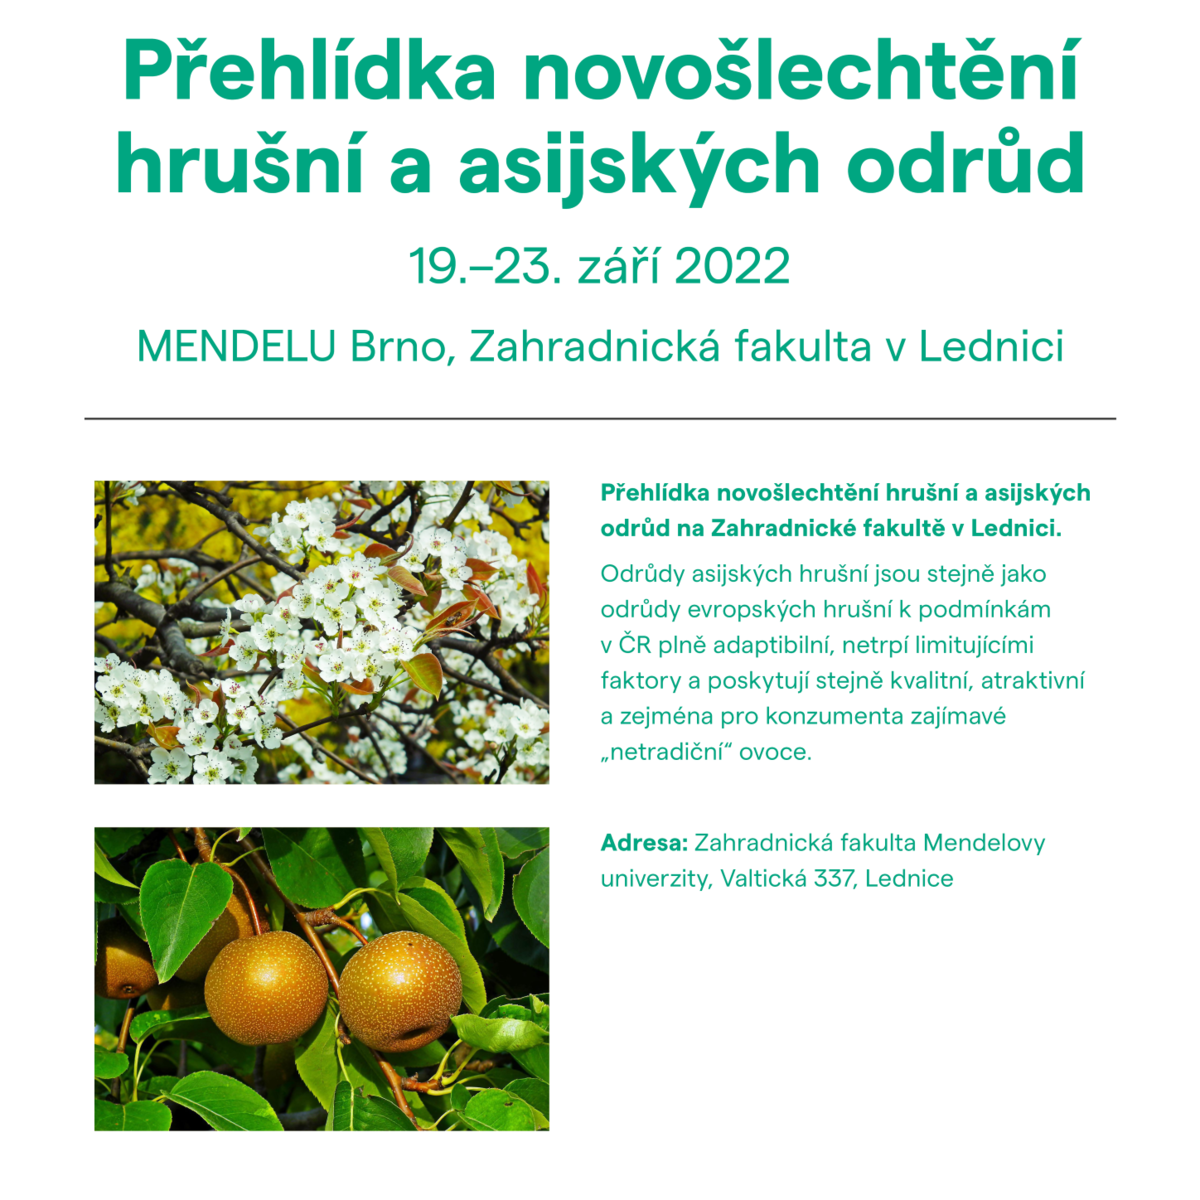 Přehlídka novošlechtění hrušní  a asijských odrůd – MENDELU Brno